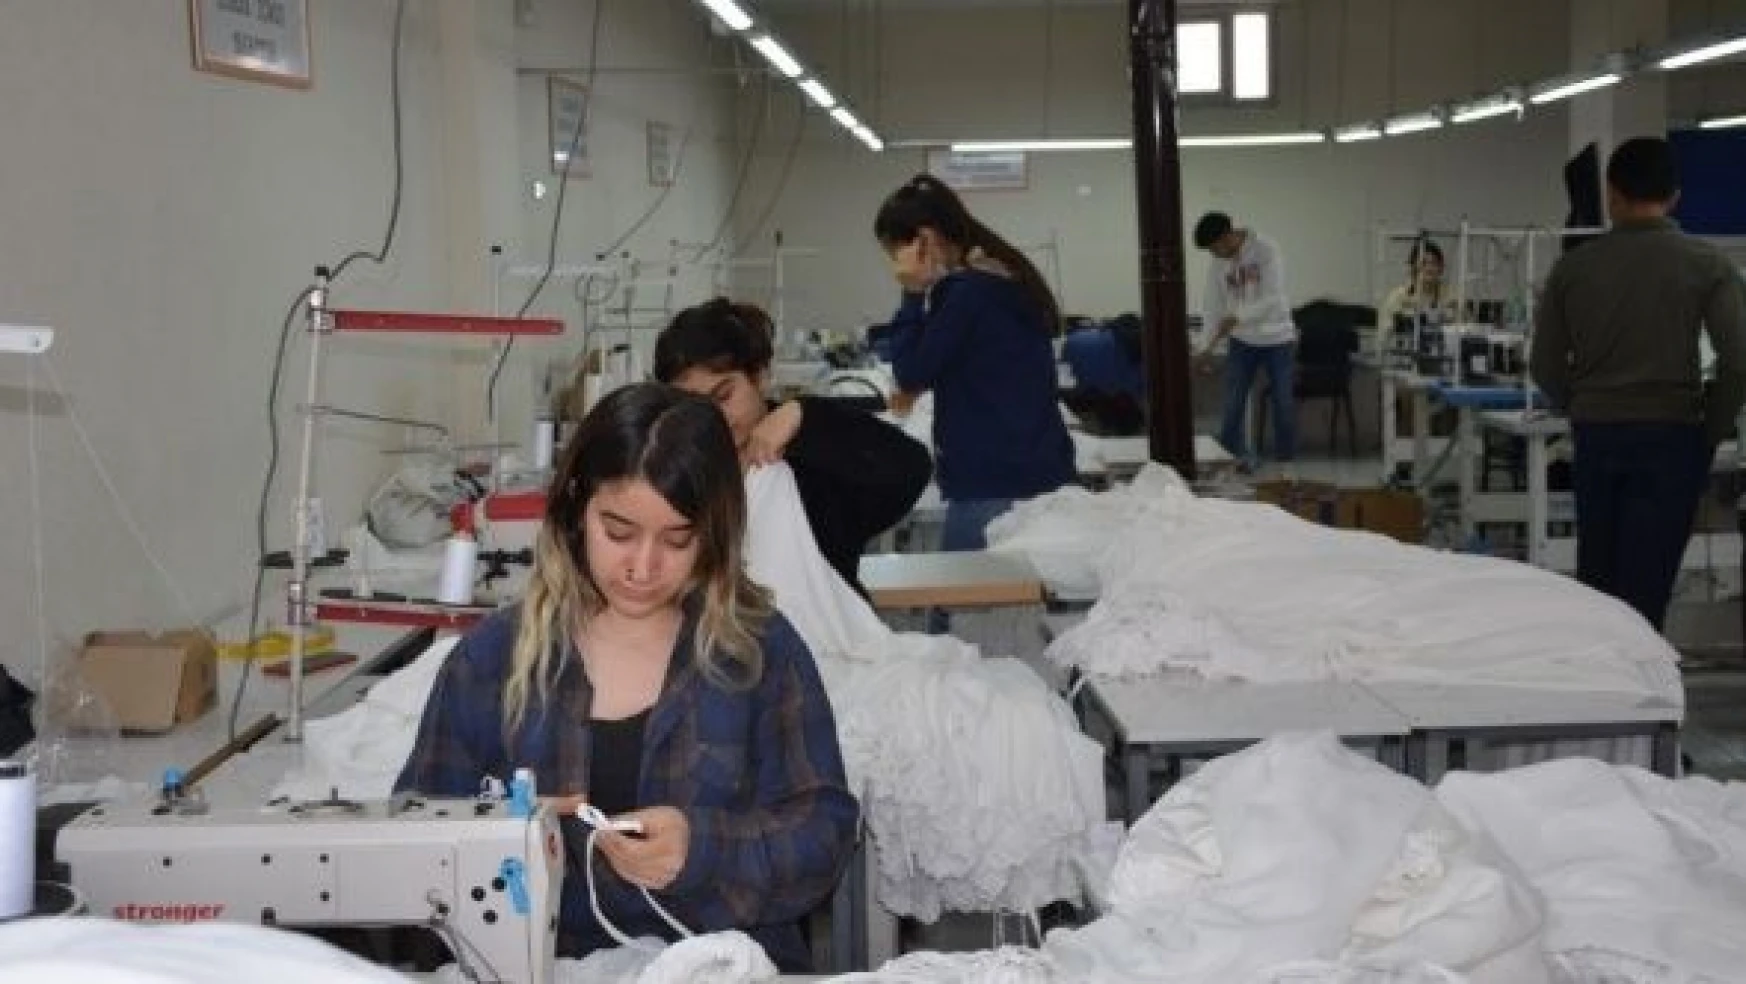 Şırnak'ta tekstil işçileri siparişlere yetişemiyor